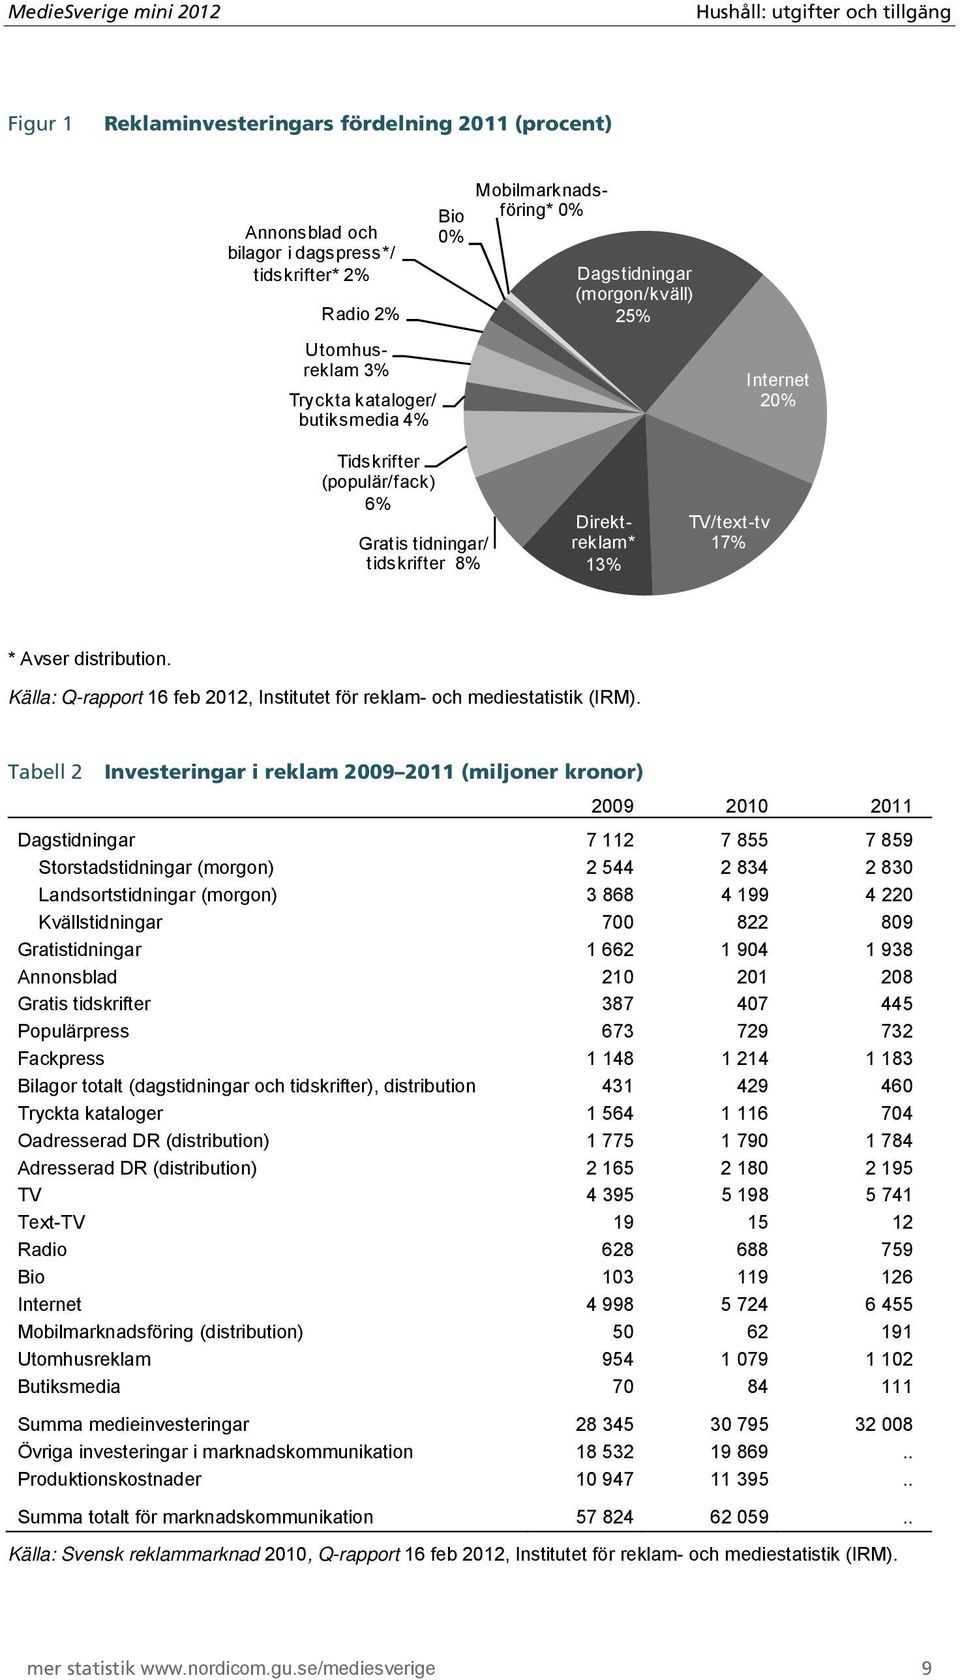 * Avser distribution. Källa: Q-rapport 16 feb 2012, Institutet för reklam- och mediestatistik (IRM).